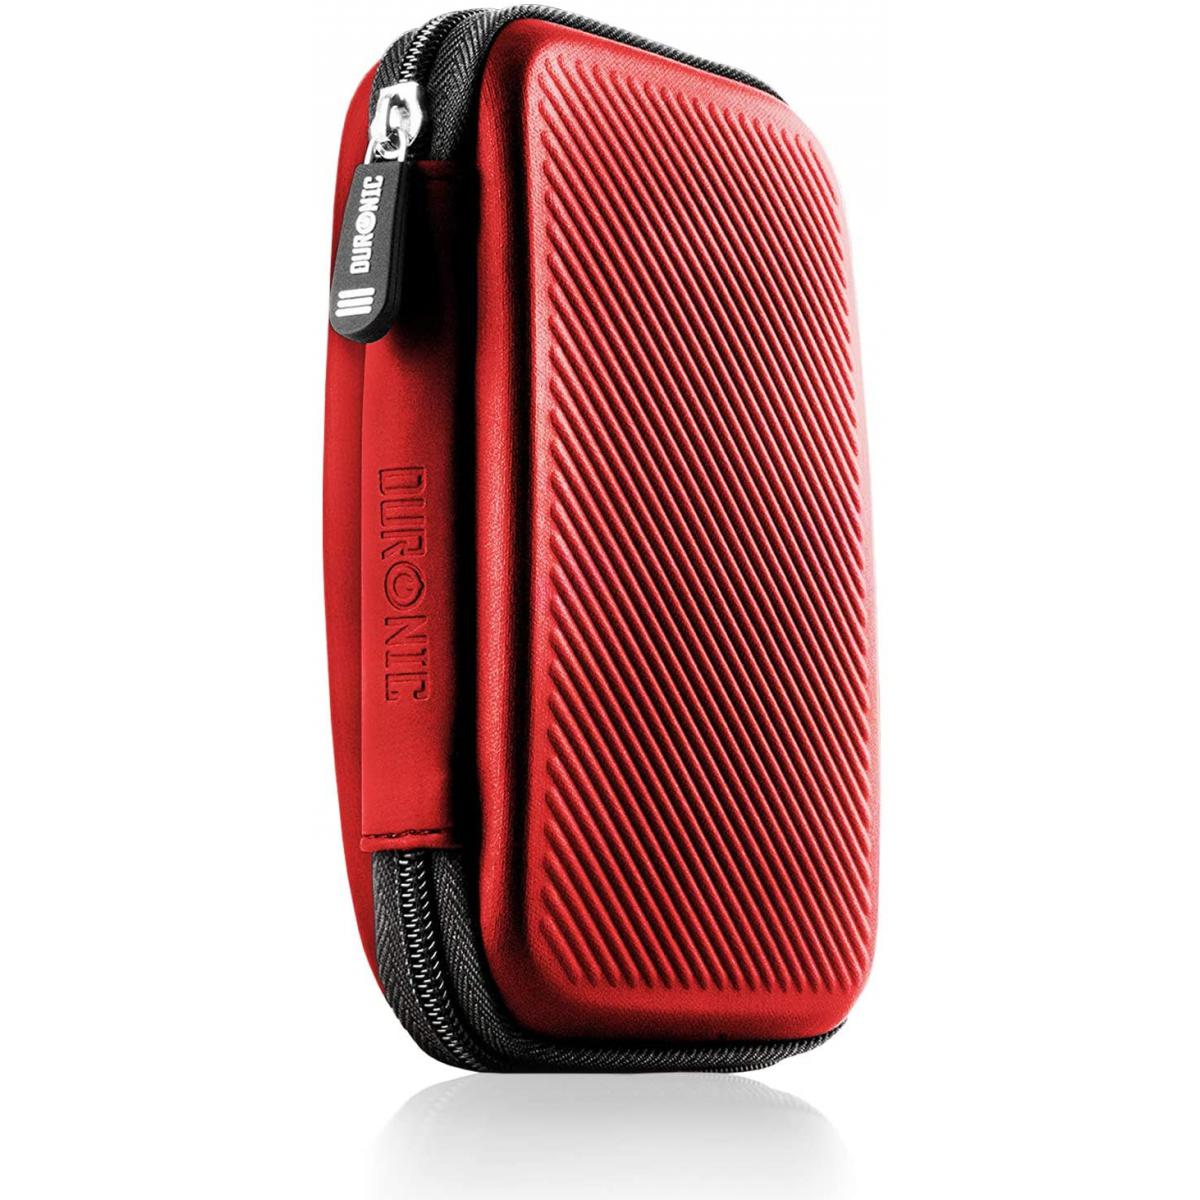 Duronic - Duronic HDC2 RD étui de protection semi rigide pour disque dur, GPS, batterie portable, liseuse | housse pour disques durs externes | rouge | EVA antichoc | Léger et compact | 11 x 15 cm - Coque, étui smartphone